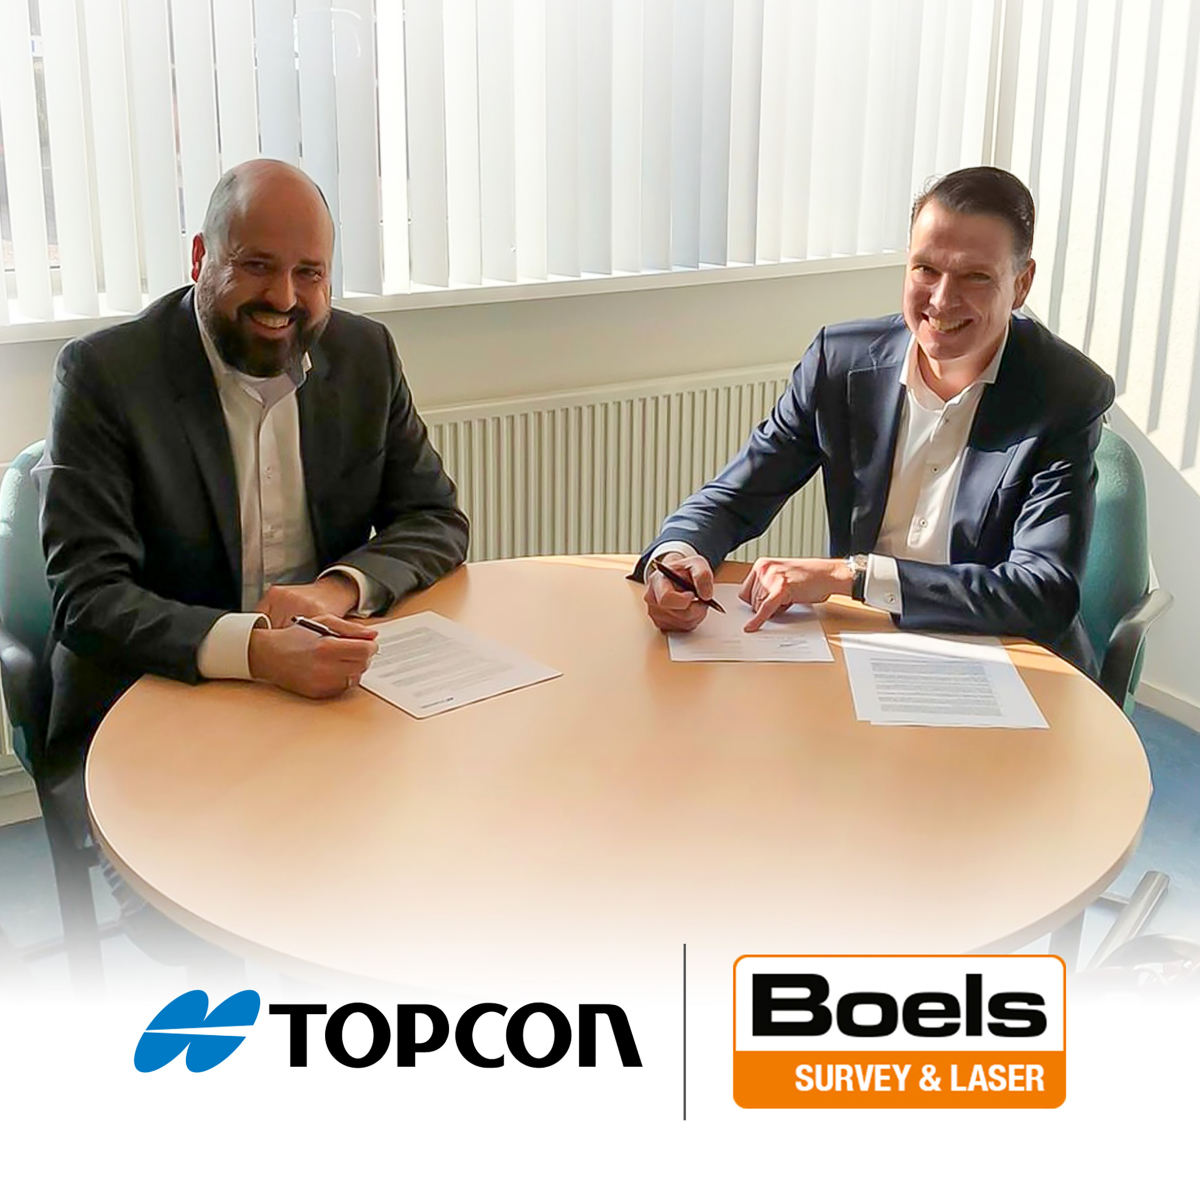 Unterzeichneten die Vereinbarung zur Mietkooperation: Guido Elzenaar (l.), Geomatik-Vertriebsleiter bei Topcon Positioning Netherlands, und Robbert Willemsen (r.), Geschäftsbereichsleiter bei Boels Survey & Laser.